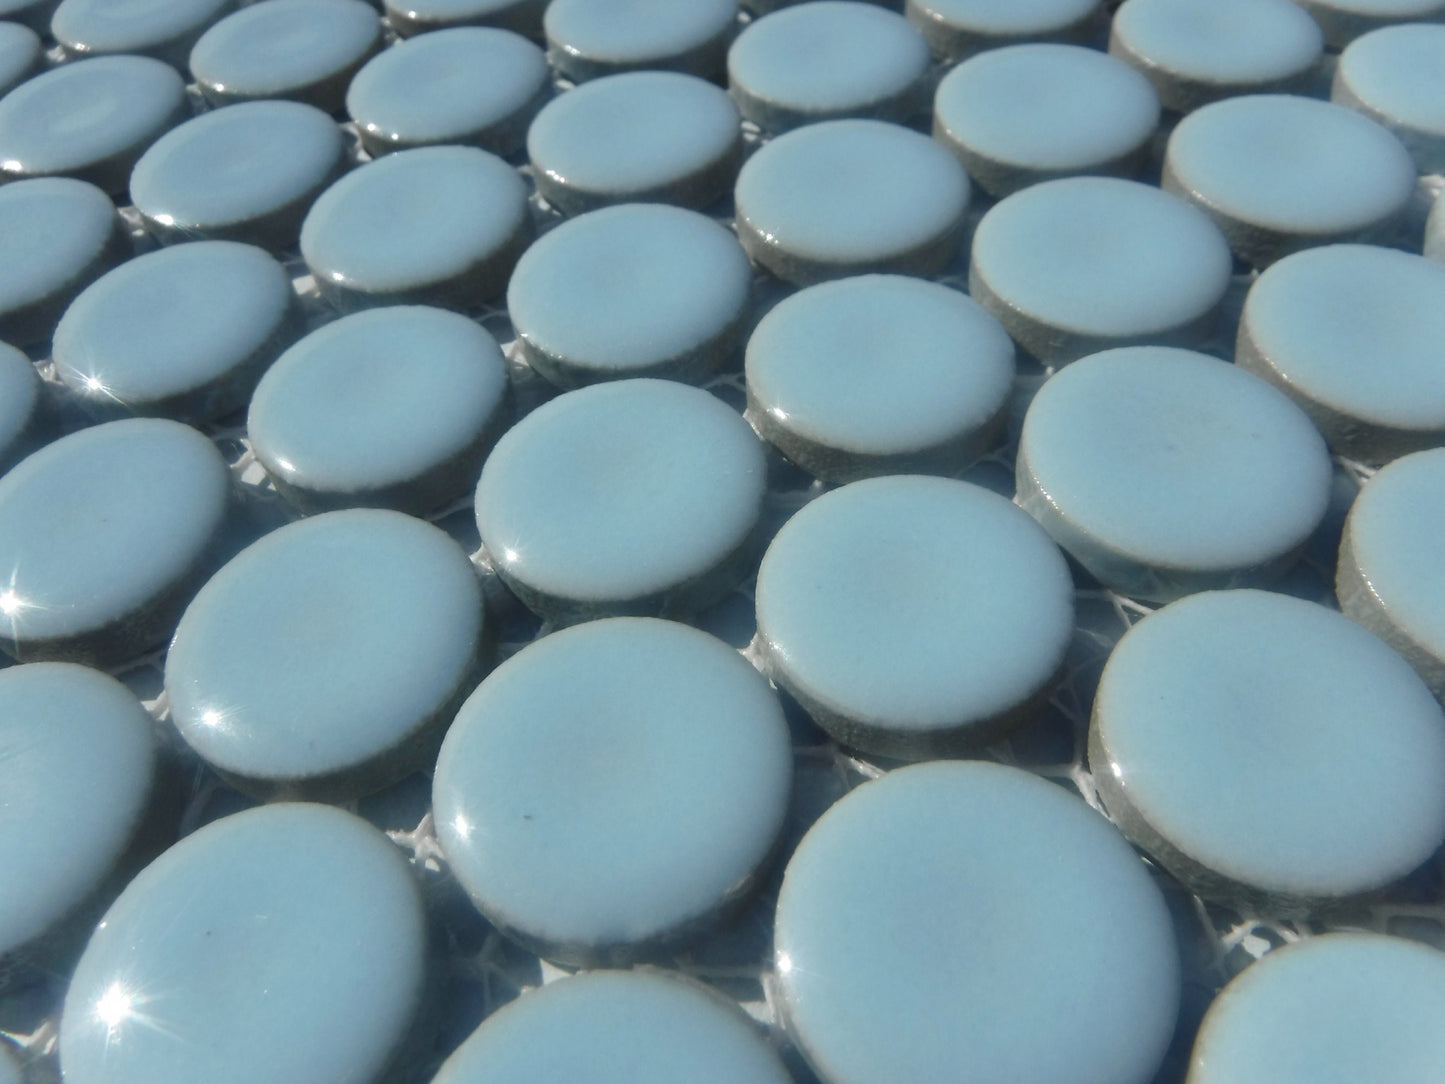 Pale Blue Ceramic Tiles - 2 cm Penny Rounds Mosaic Tiles - 25 Tiles - Porcelain Circles